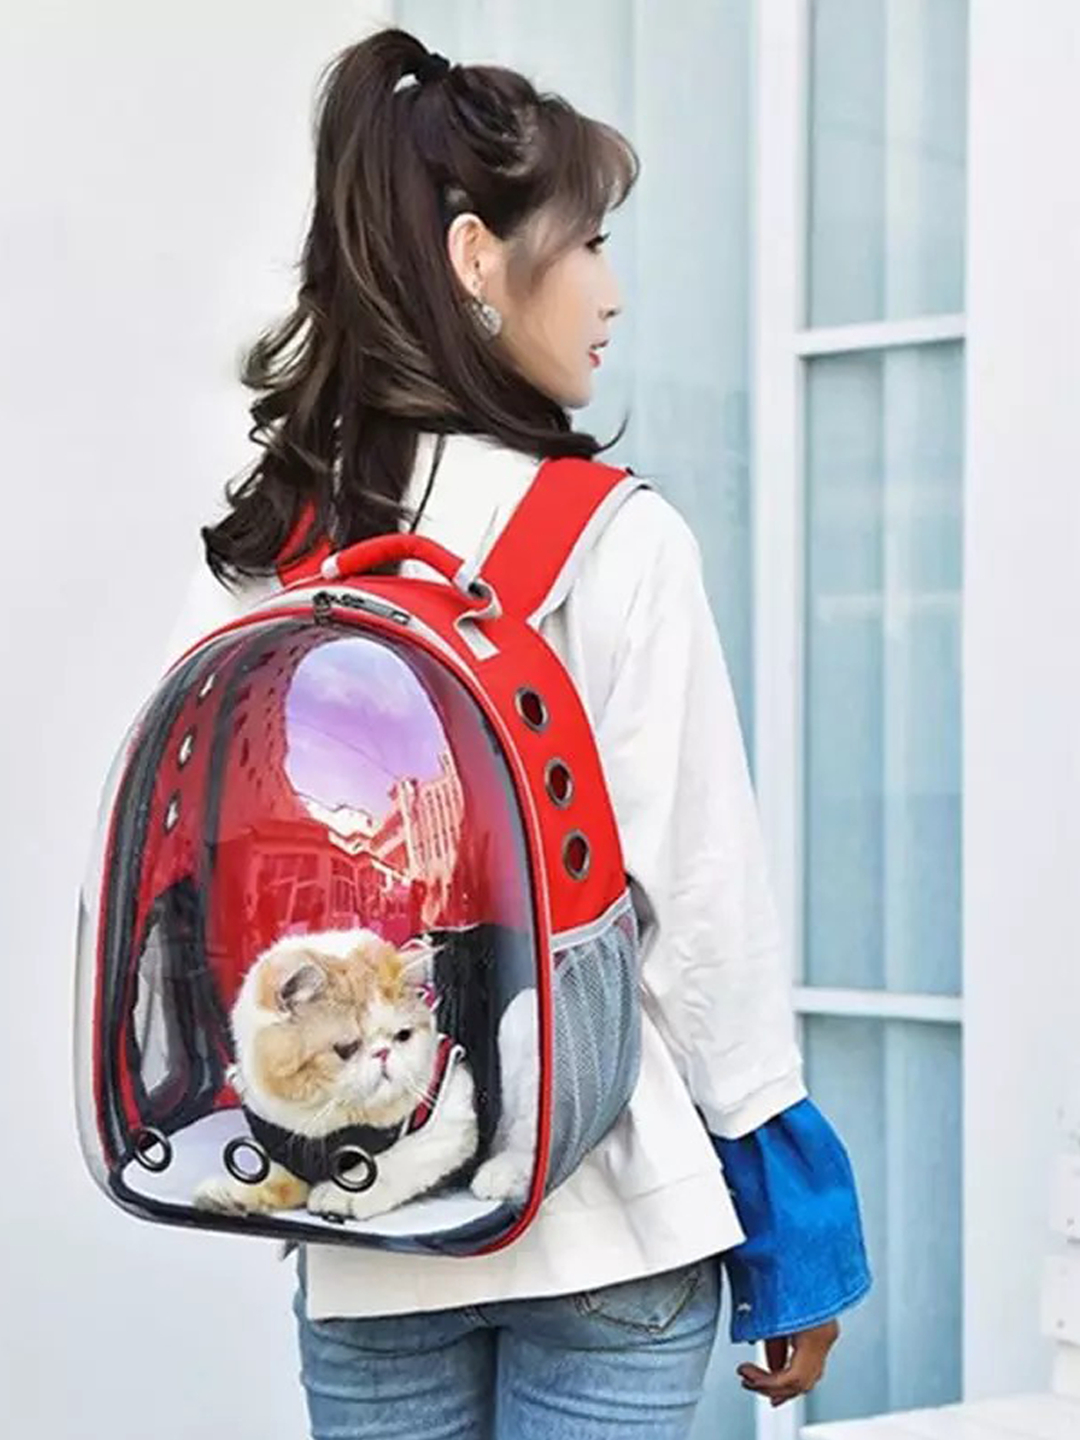 Купить рюкзак переноску для кошек. Рюкзак для переноски животных прозрачный Space Capsule. Сумка-переноска Loffepet рюкзак "космический турист" /Pet-g08xb022-1302/. Рюкзак переноска для кошек прозрачный.